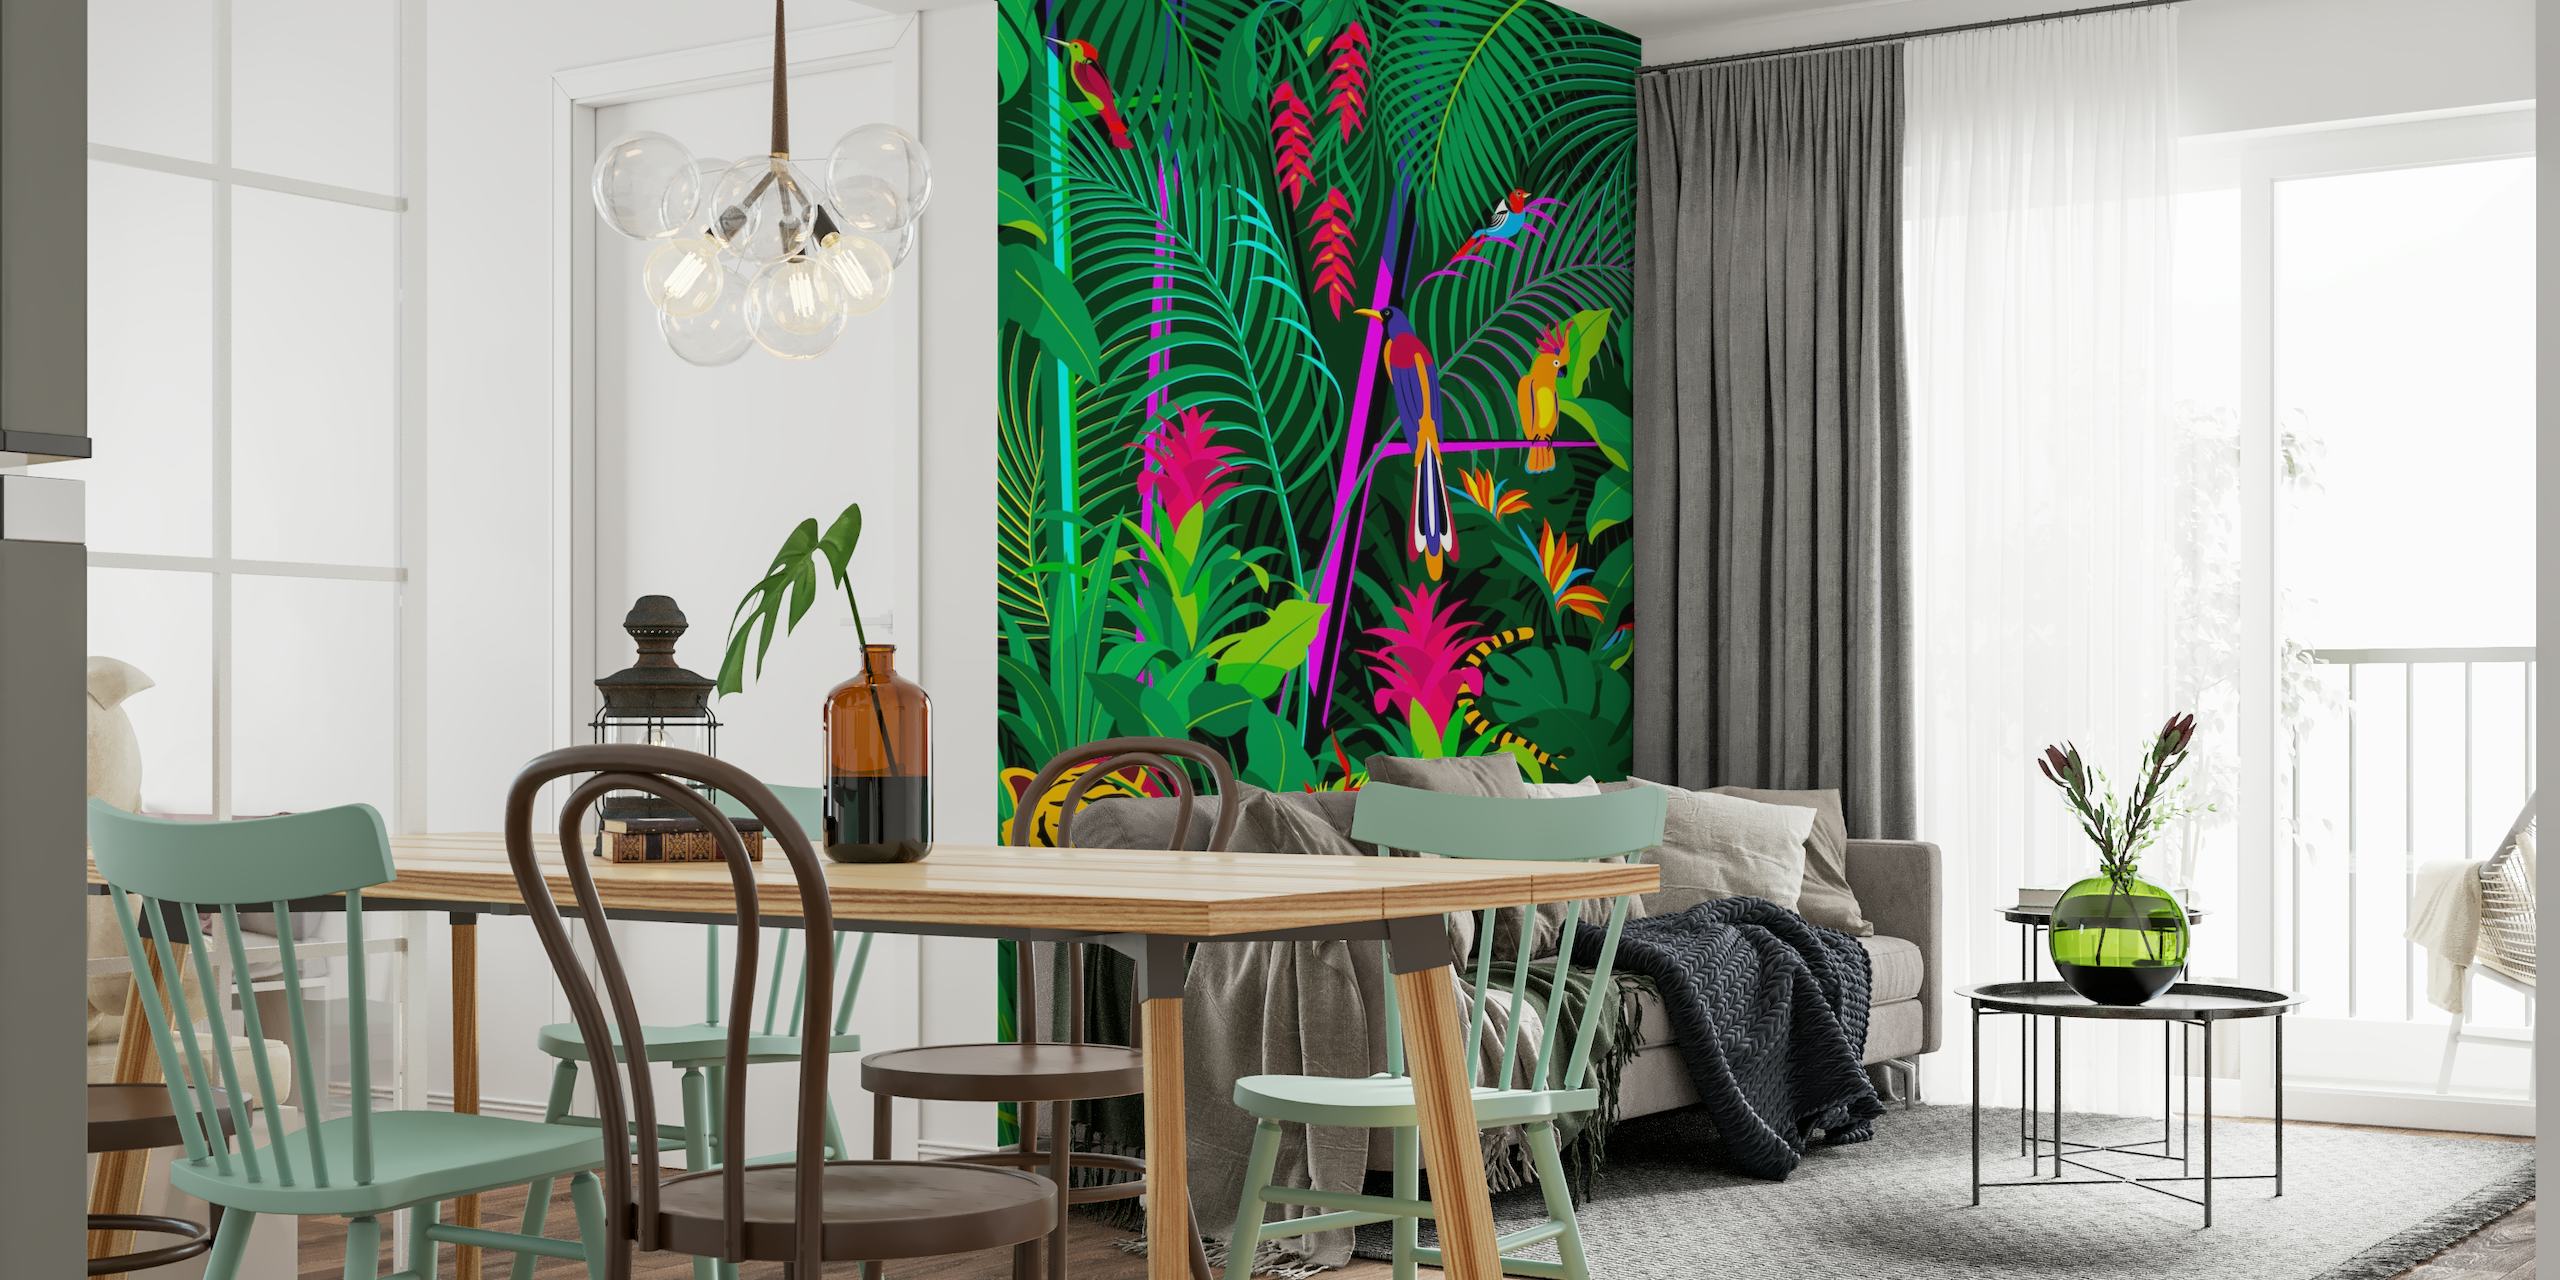 Tropisches Dschungel-Wandbild mit dichtem grünem Blattwerk, bunten Blumen und einem versteckten Tiger